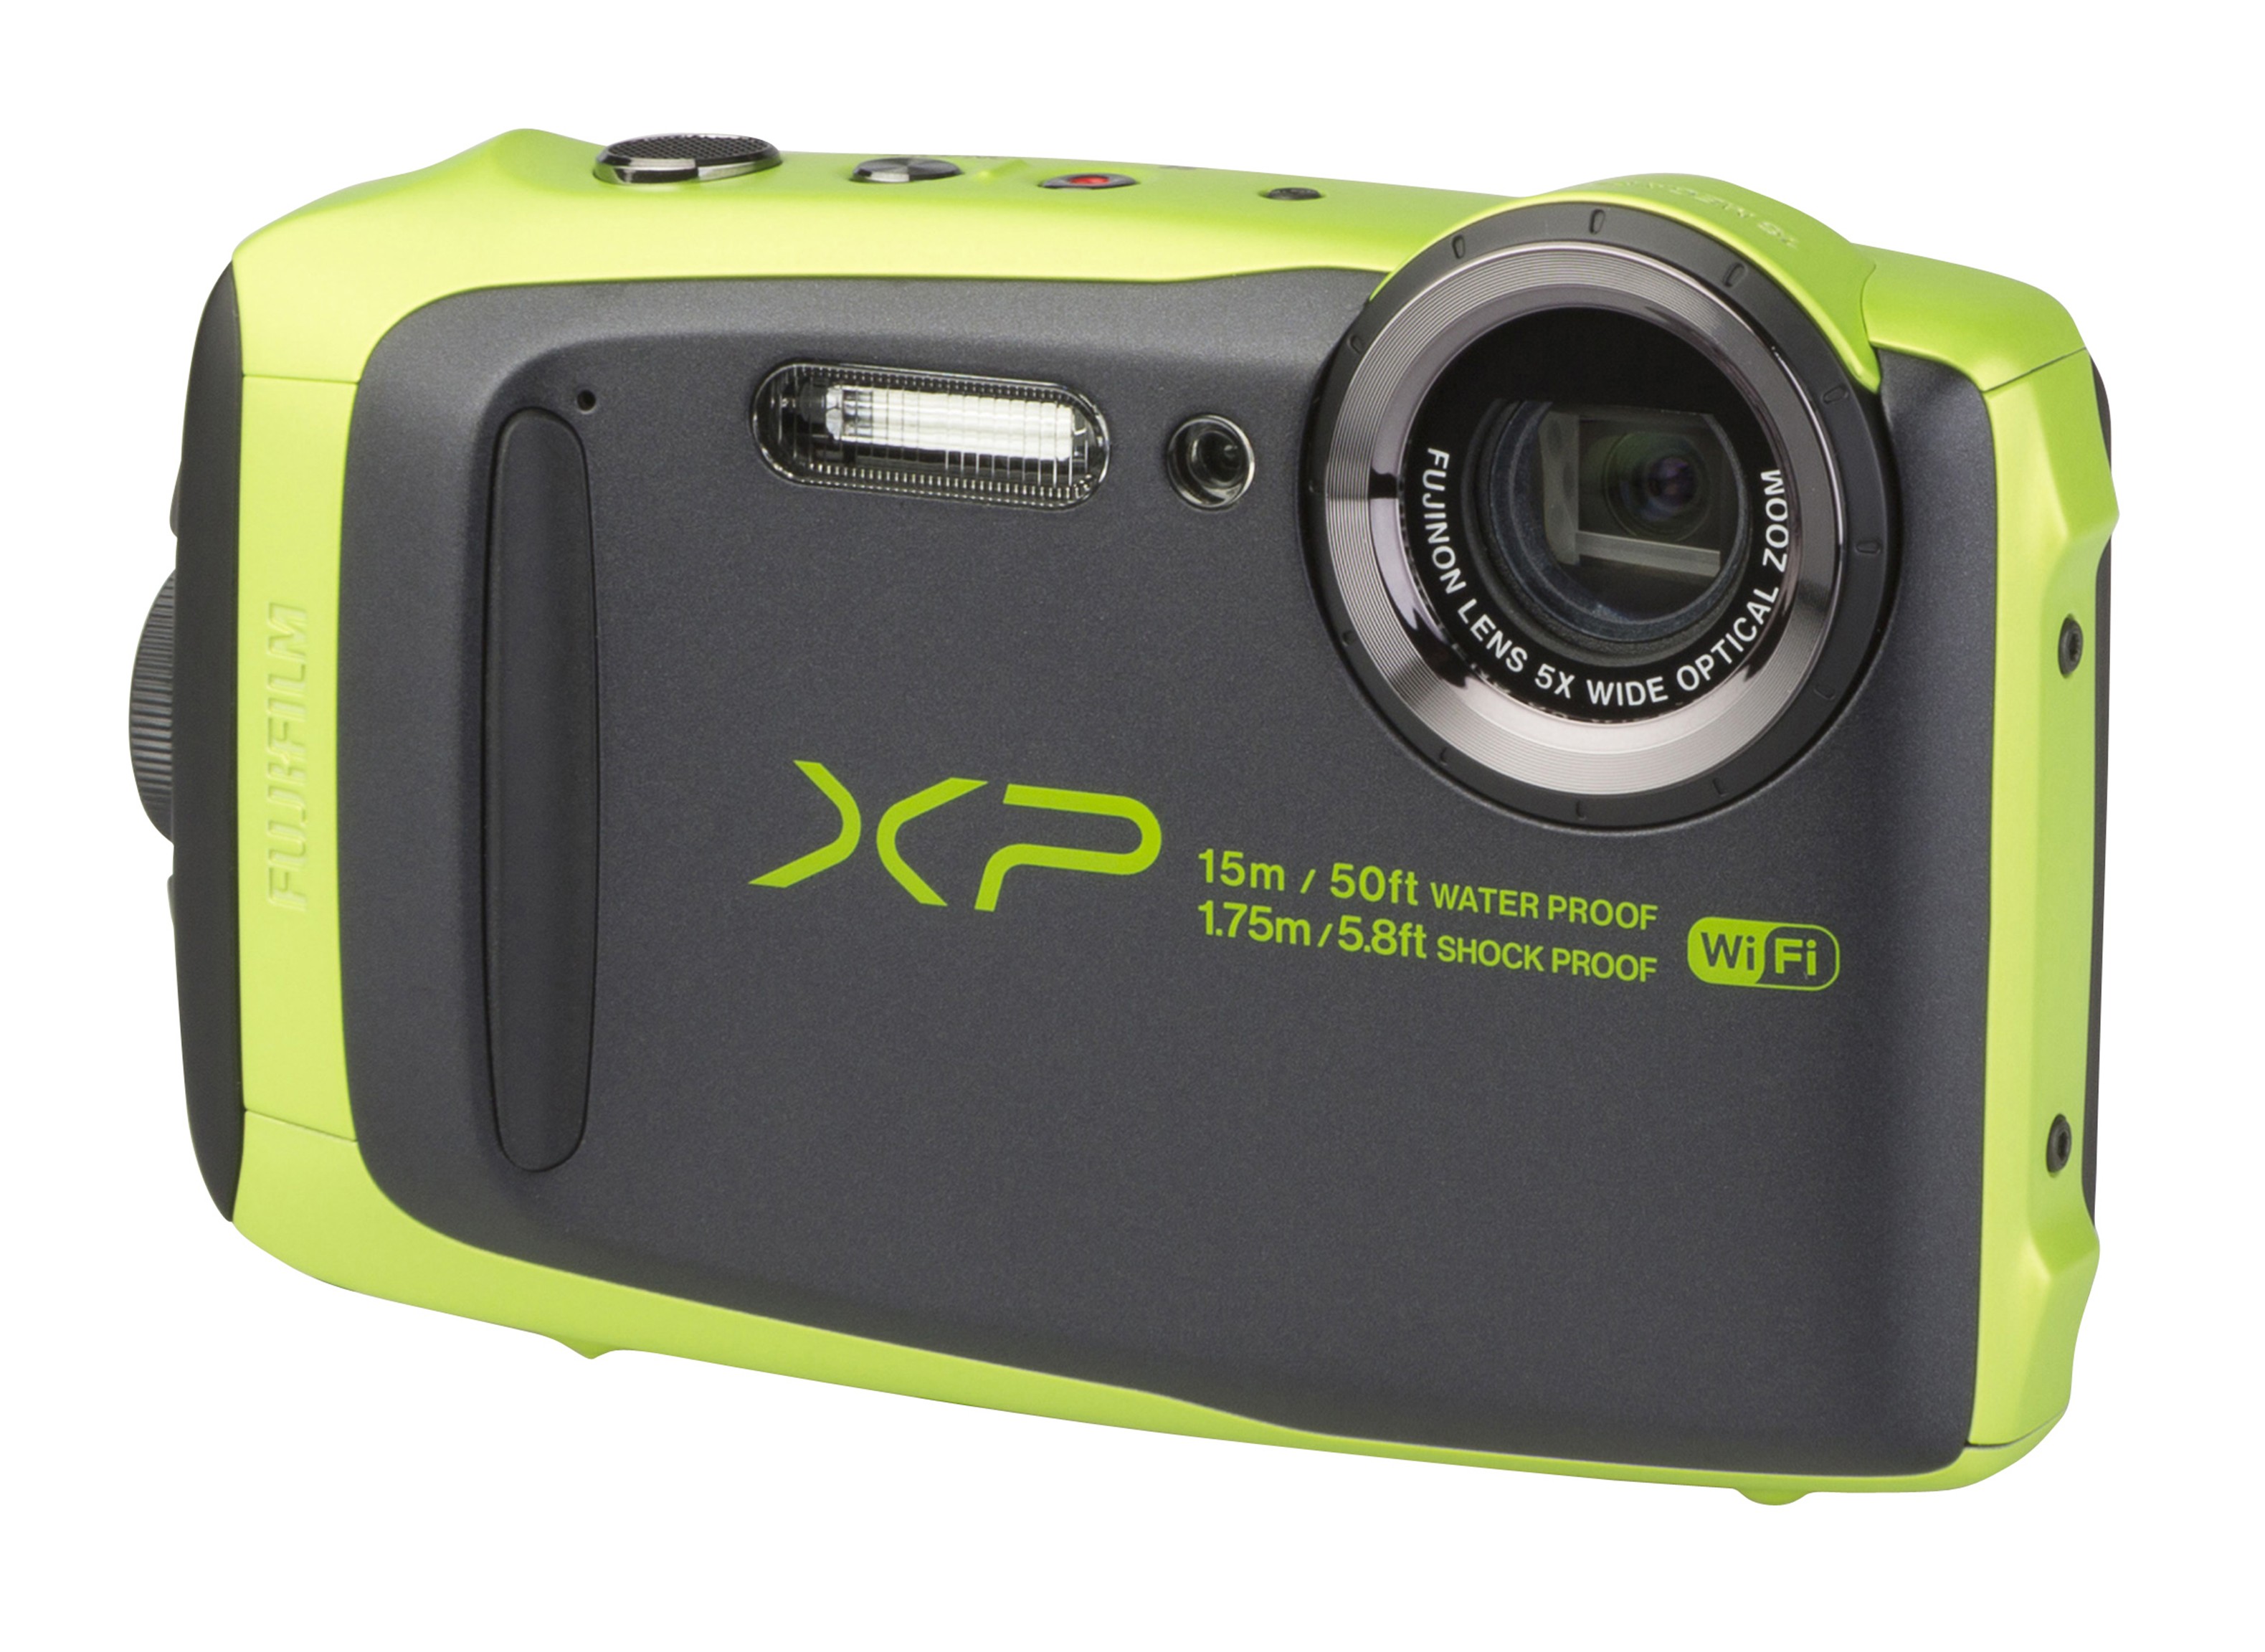 Fujifilm FinePix XP90 Camera Review - Consumer Reports